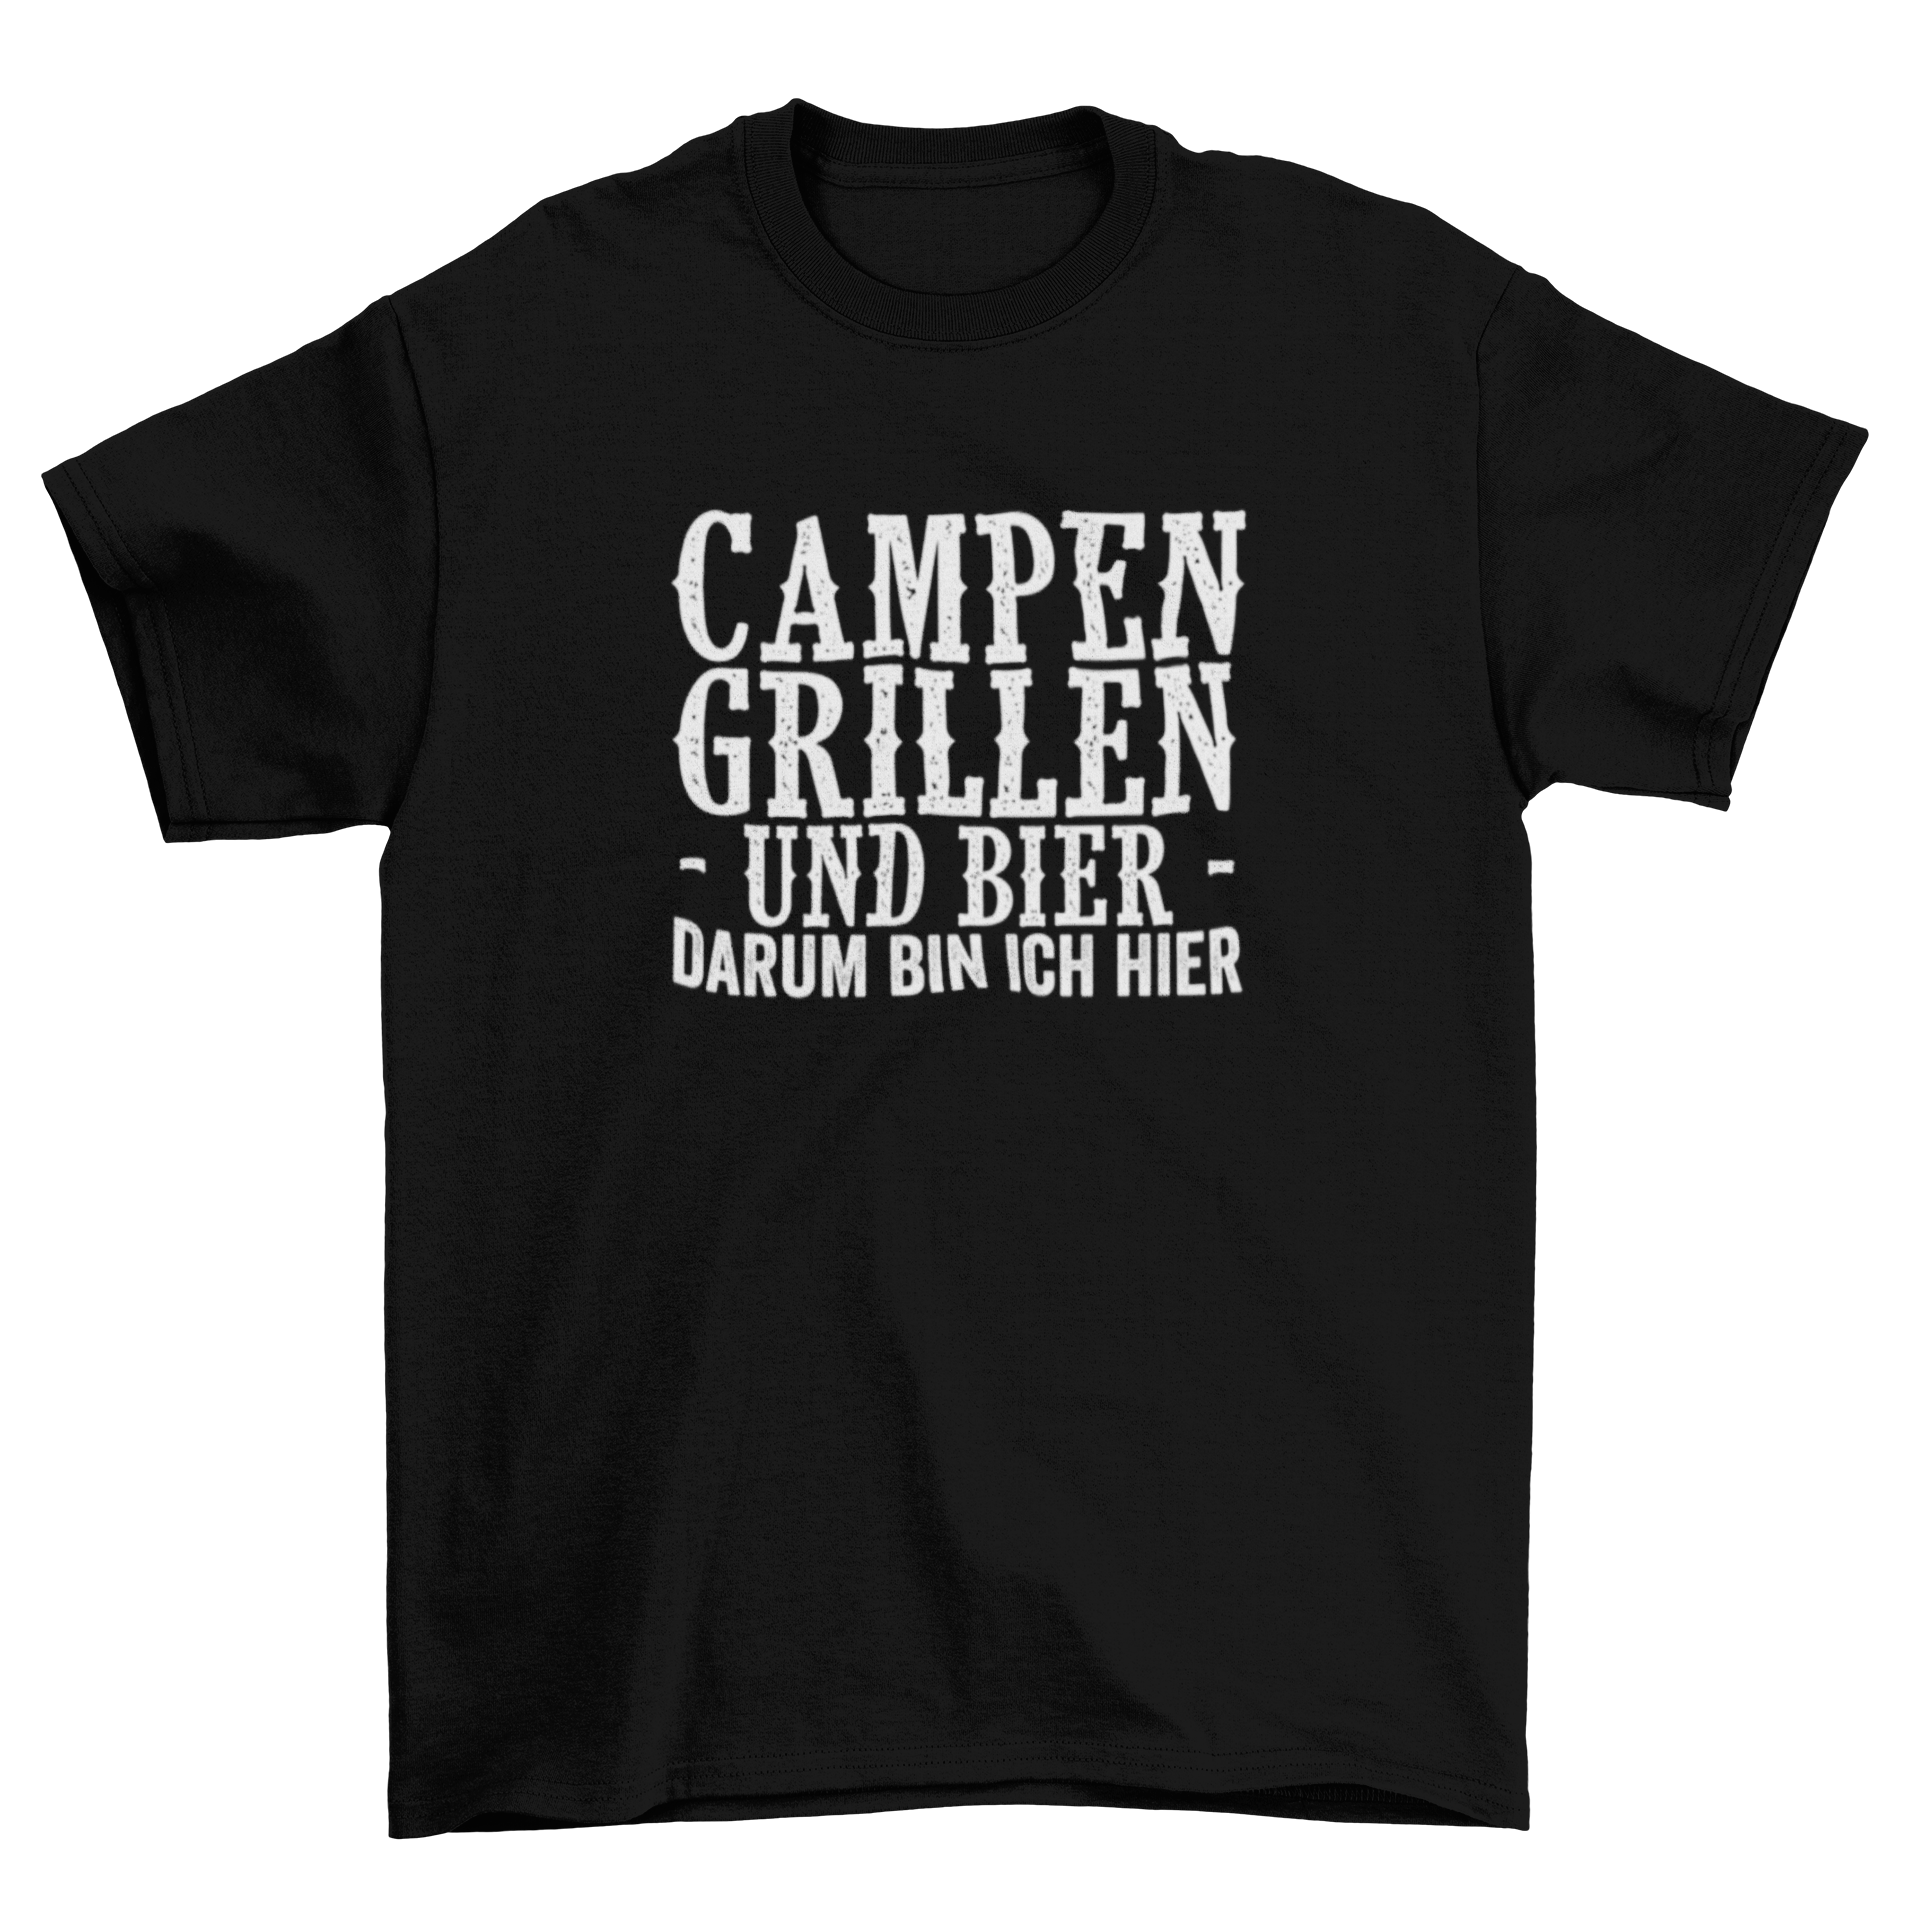 Campen, grillen und Bier  - T- Shirt